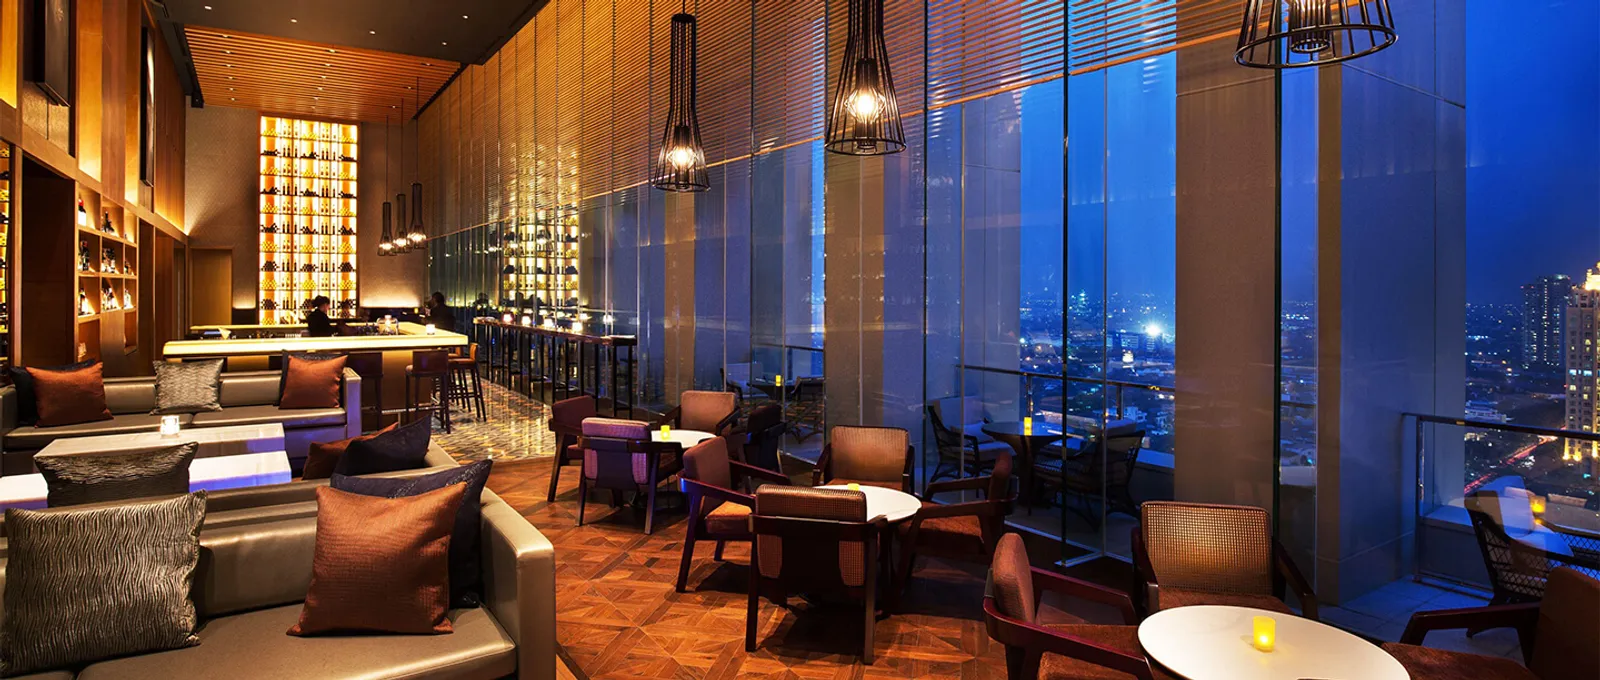 5 Rekomendasi Hotel Fine Dining di Jakarta, Mewah dan Romantis